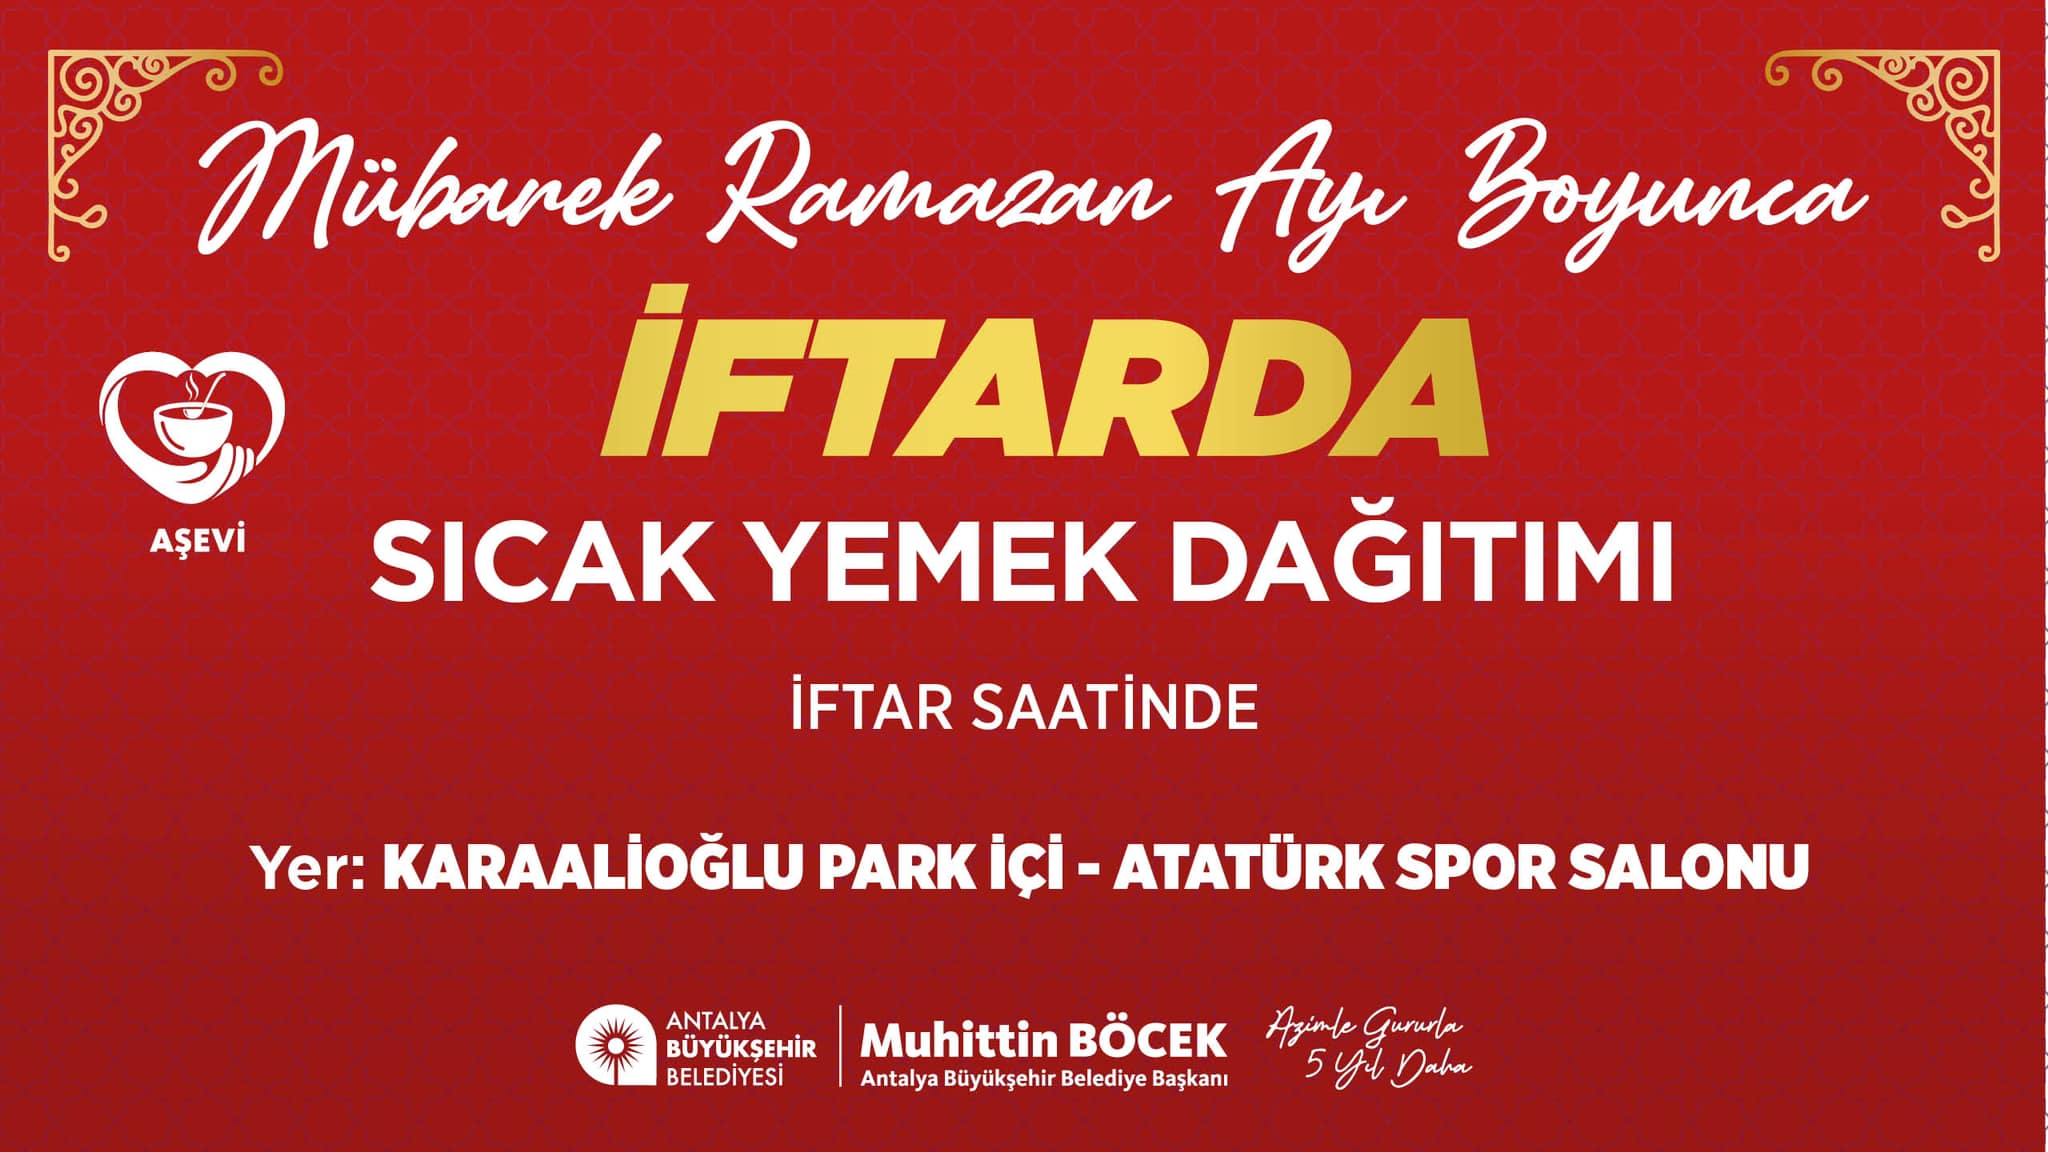 Antalya Büyükşehir Belediyesi, Ramazan Ayı'nda ihtiyaç sahiplerine ücretsiz iftar yemeği dağıtacak.